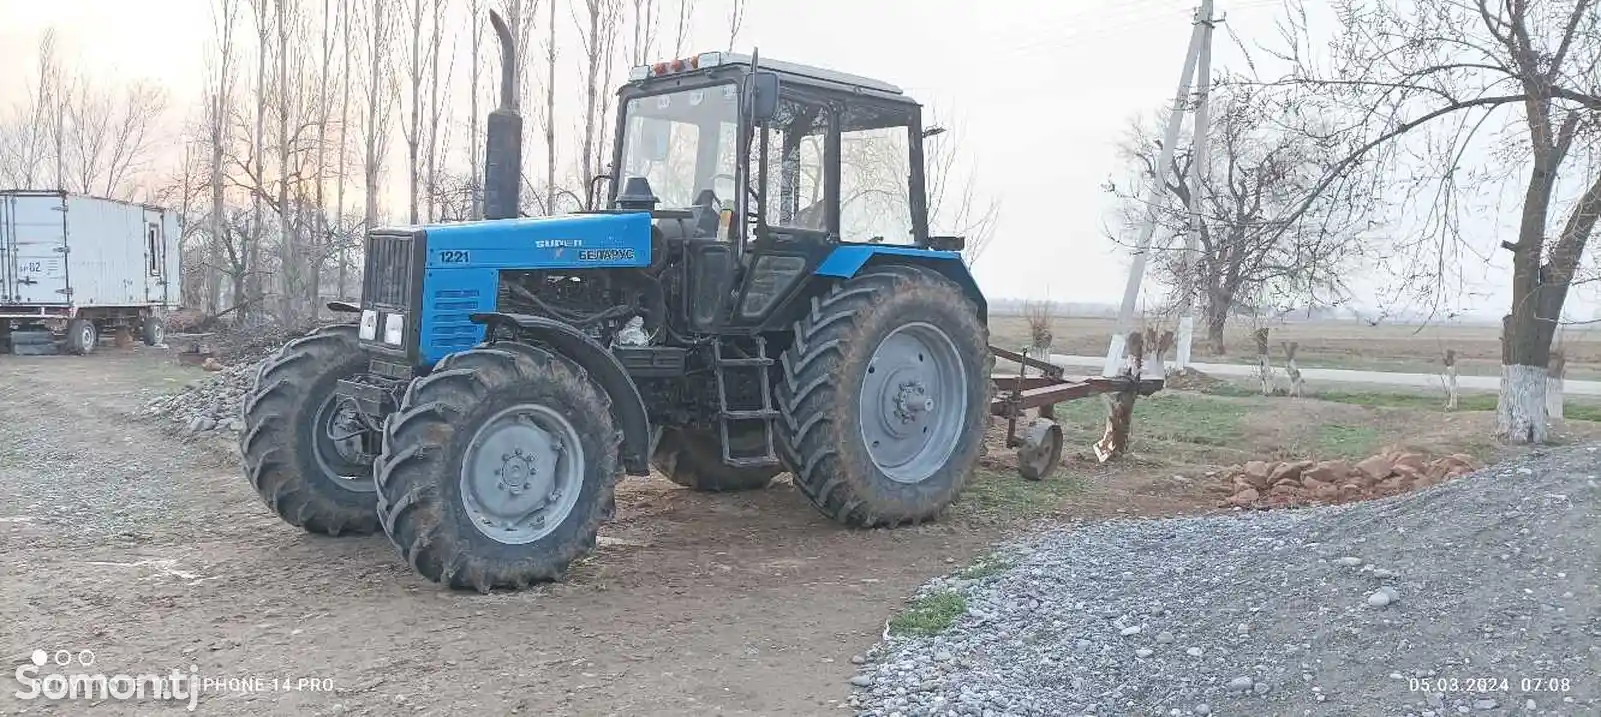 Трактор МТЗ Беларусь 1221-12